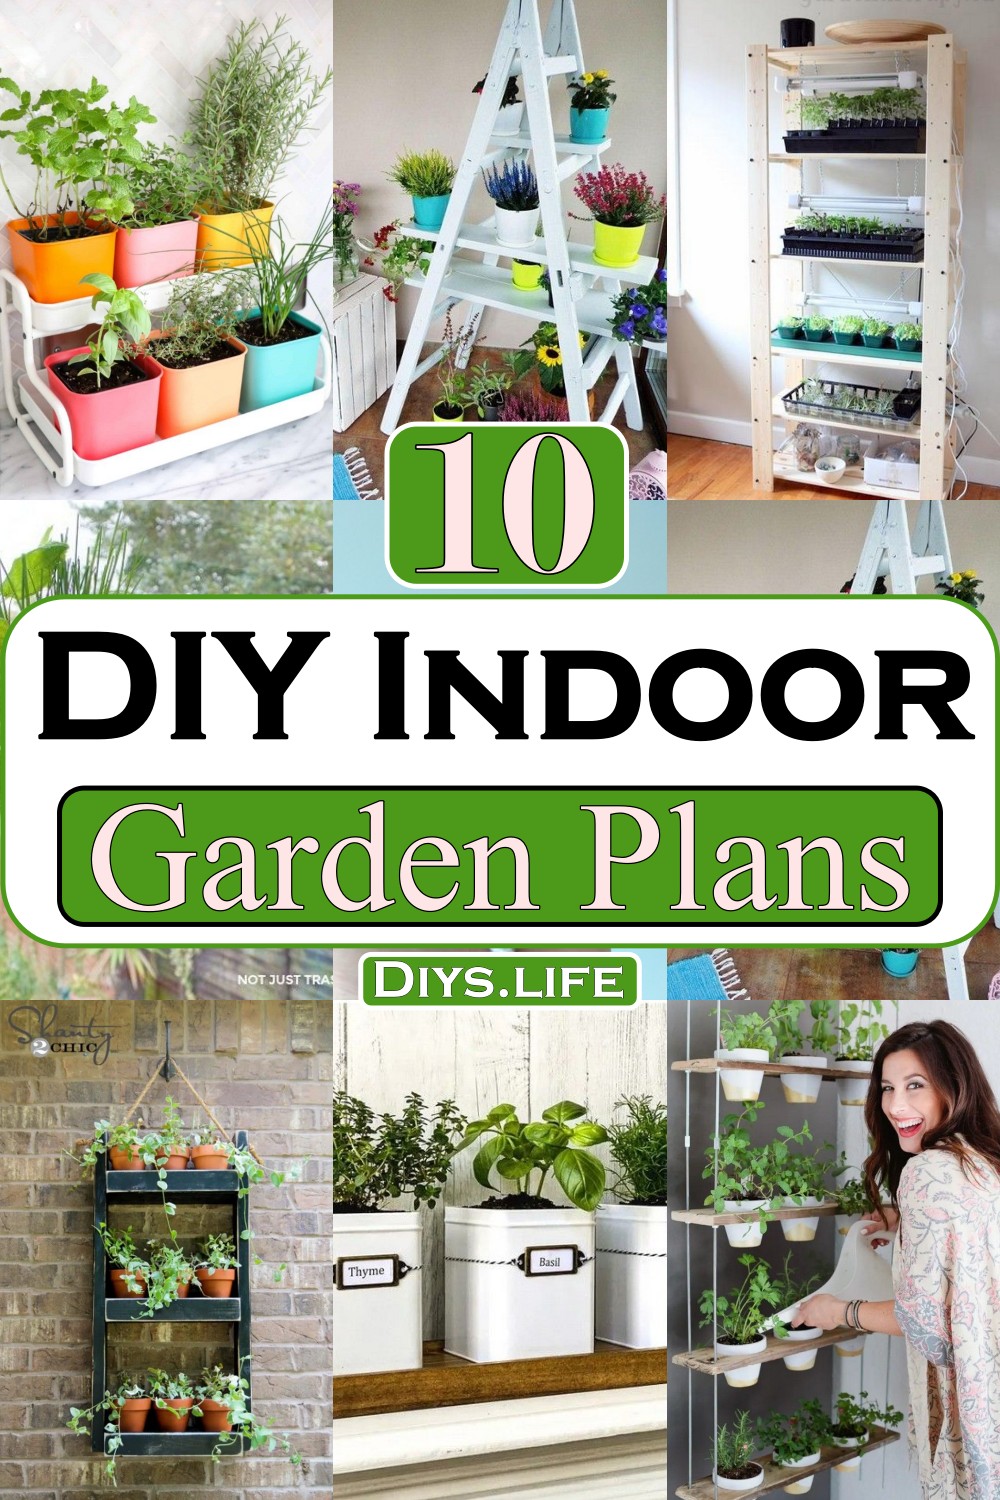 DIY Indoor Garden Plans